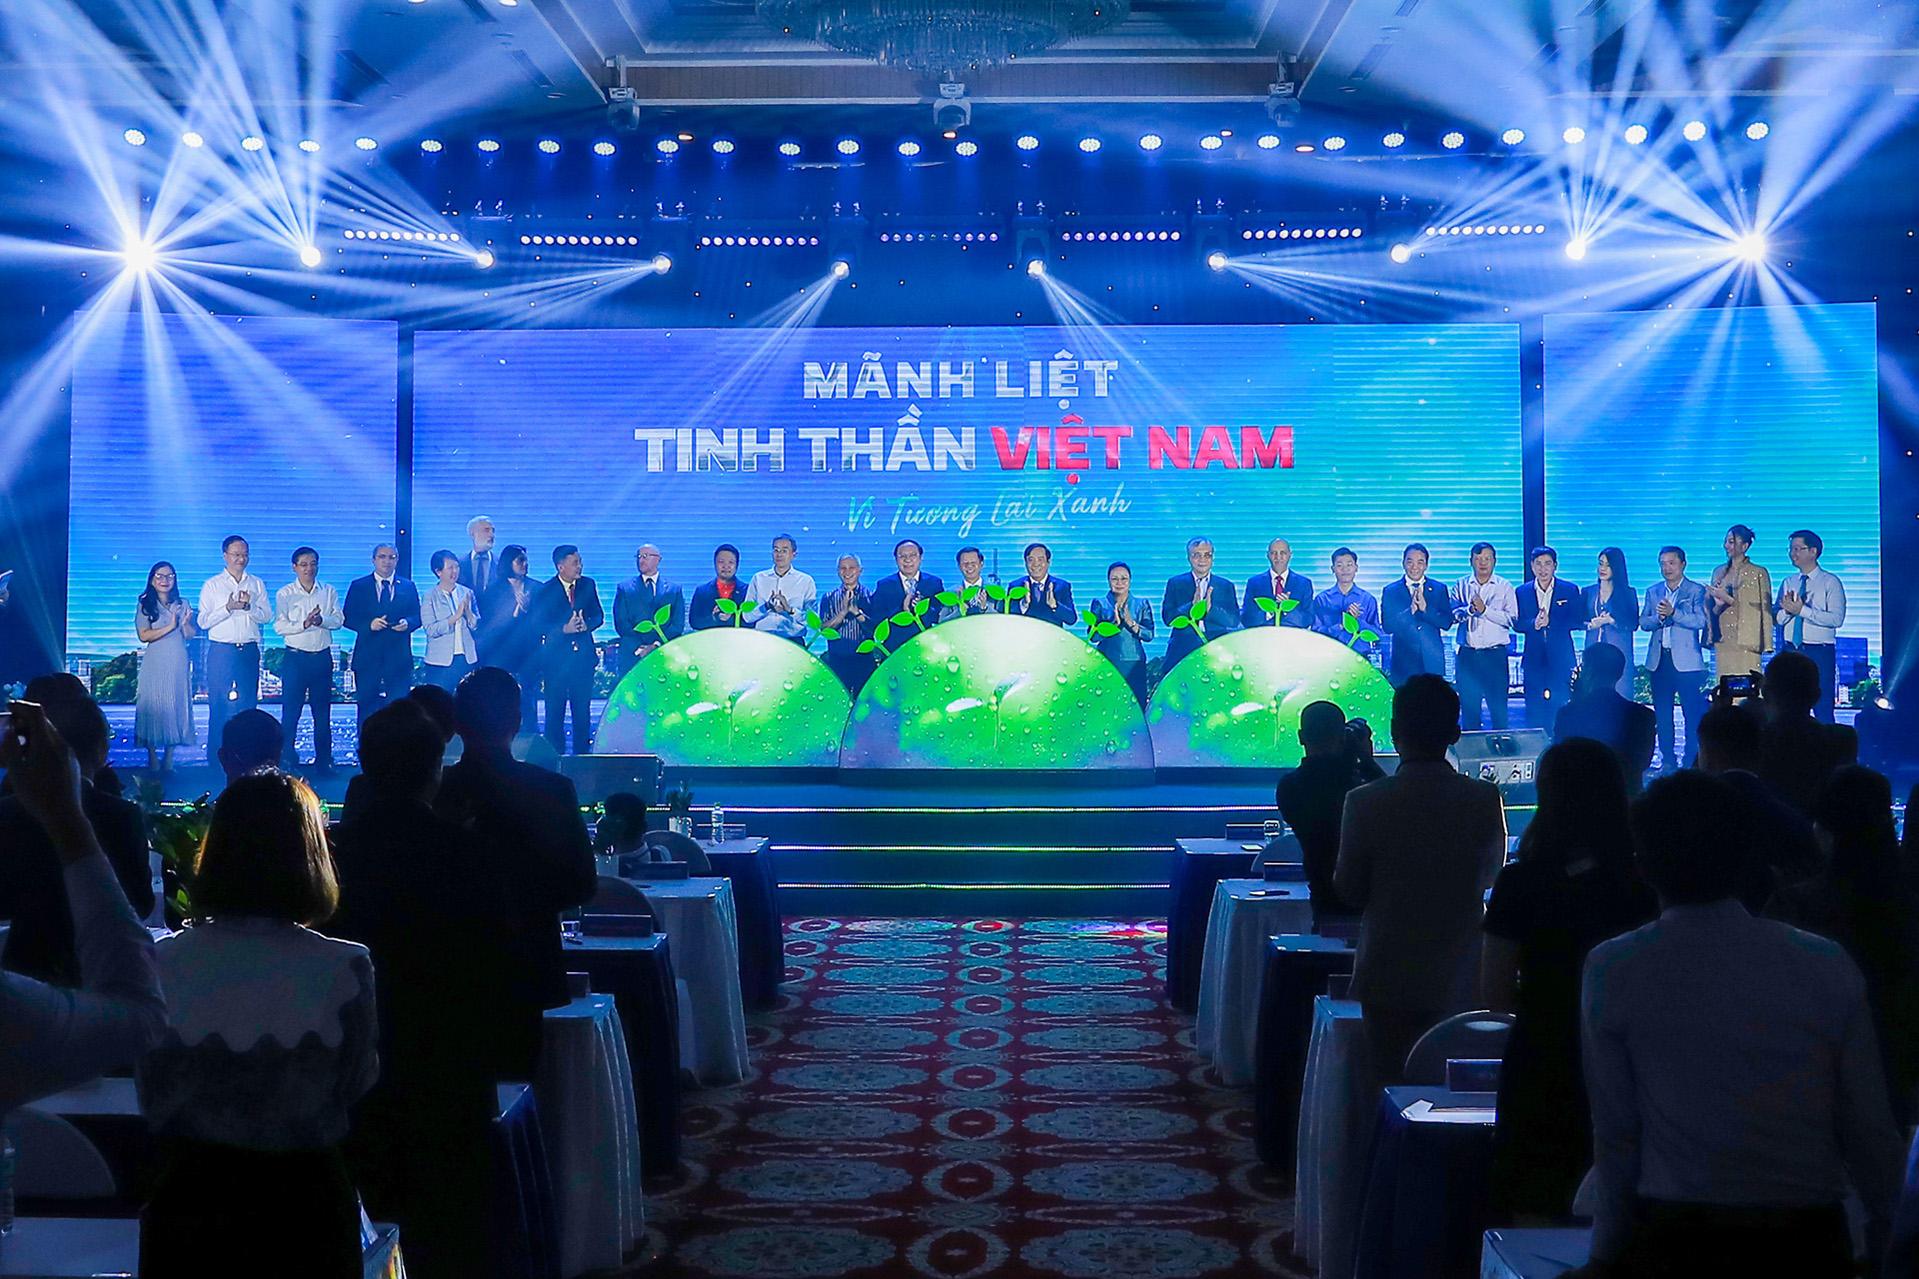 Vingroup chính thức phát động chiến dịch “Mãnh liệt tinh thần Việt Nam - Vì tương lai xanh từ ngày 26/6.